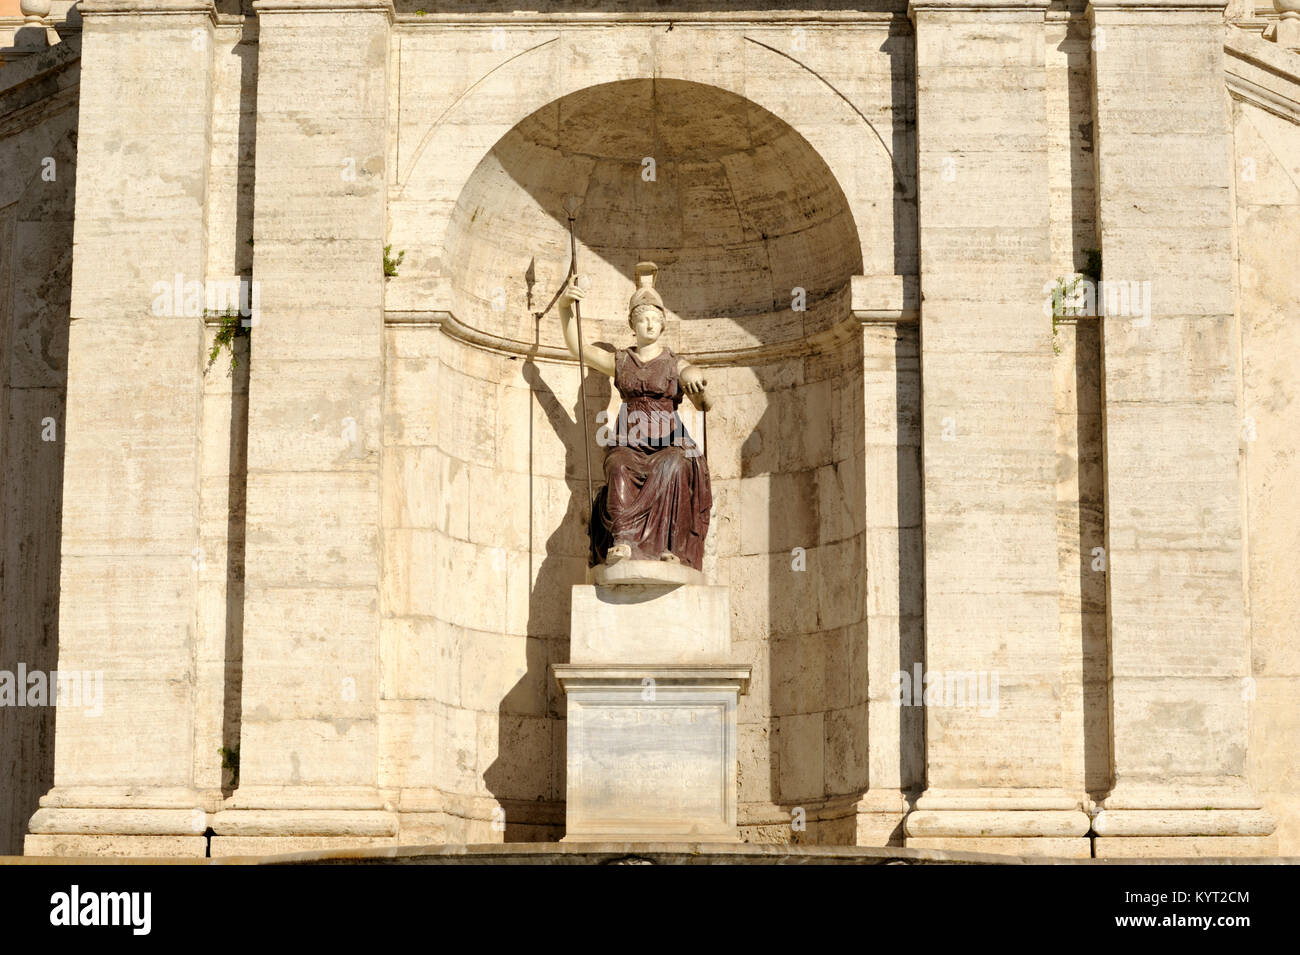 Italien, Rom, Piazza del Campidoglio, Palazzo Senatorio, Statue der römischen Göttin Roma, ursprünglich eine Statue von Minerva (1. Jahrhundert n. Chr.) Stockfoto